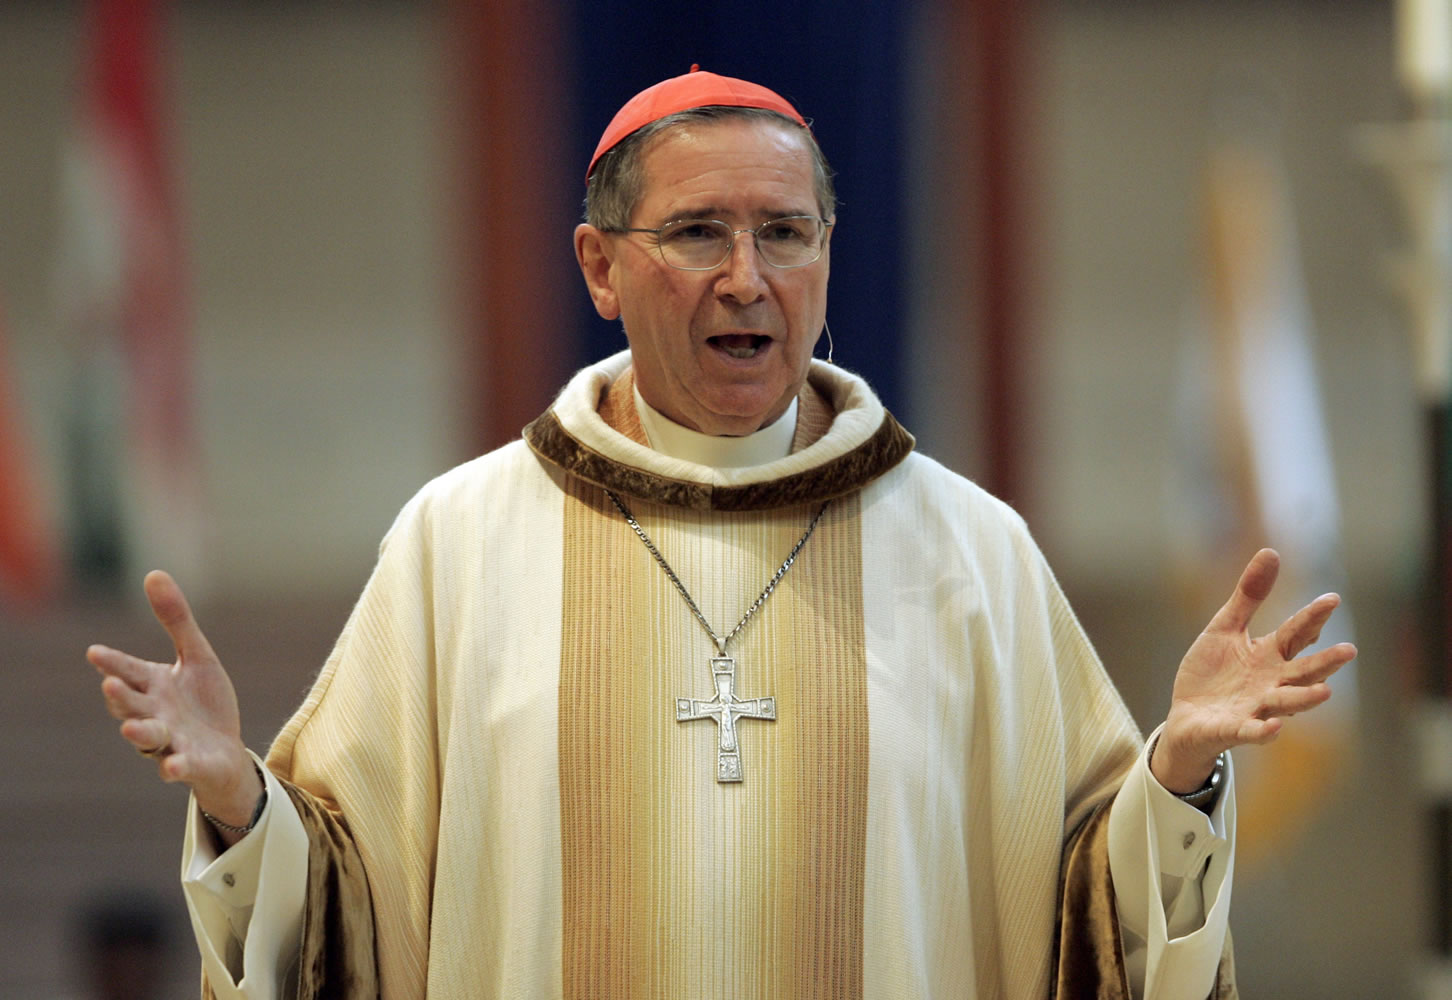 Former Cardinal Roger Mahony